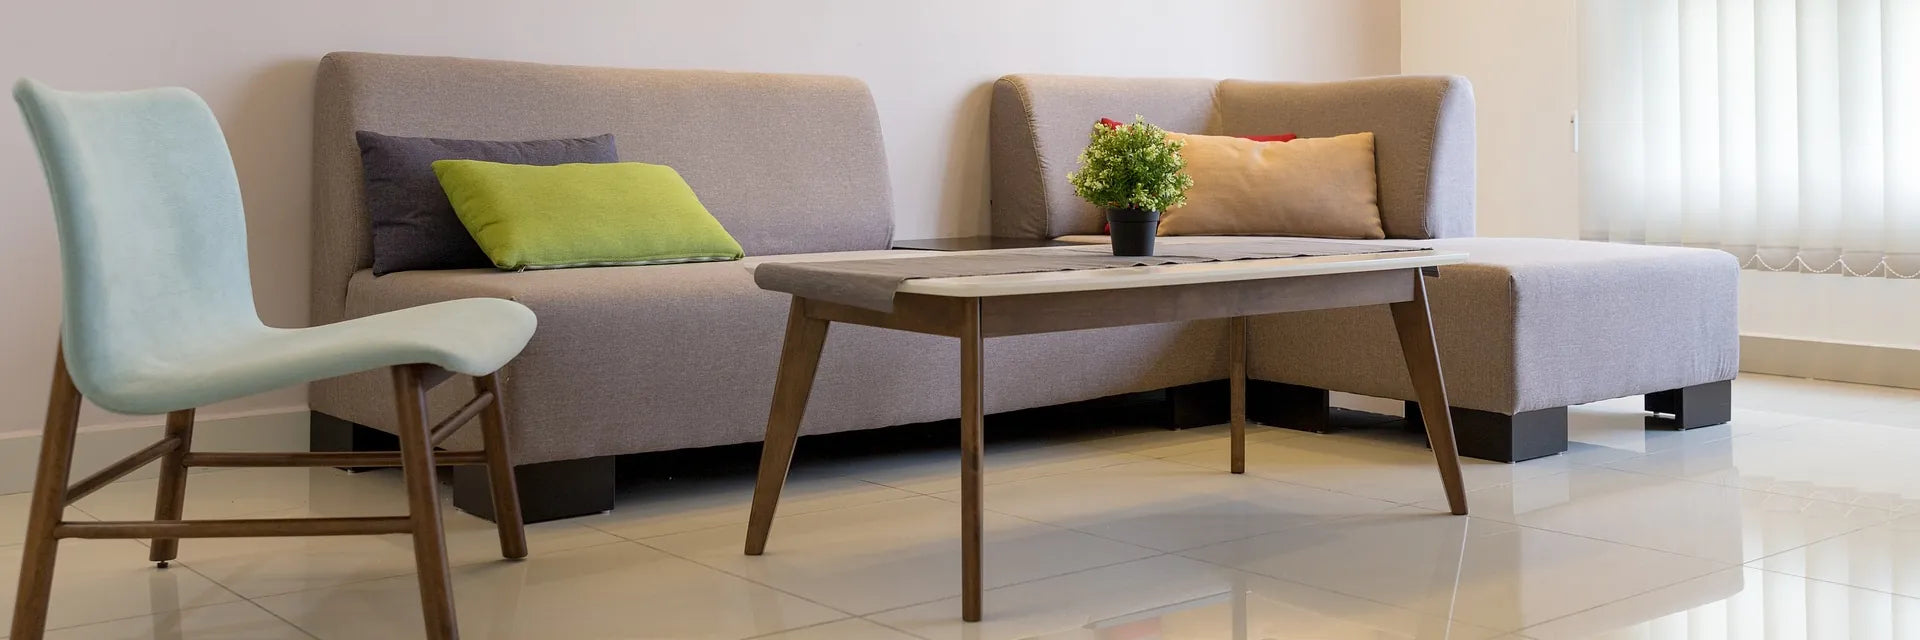 Vor einem modernen Sofa in Braun stehen ein Tisch und ein Stuhl